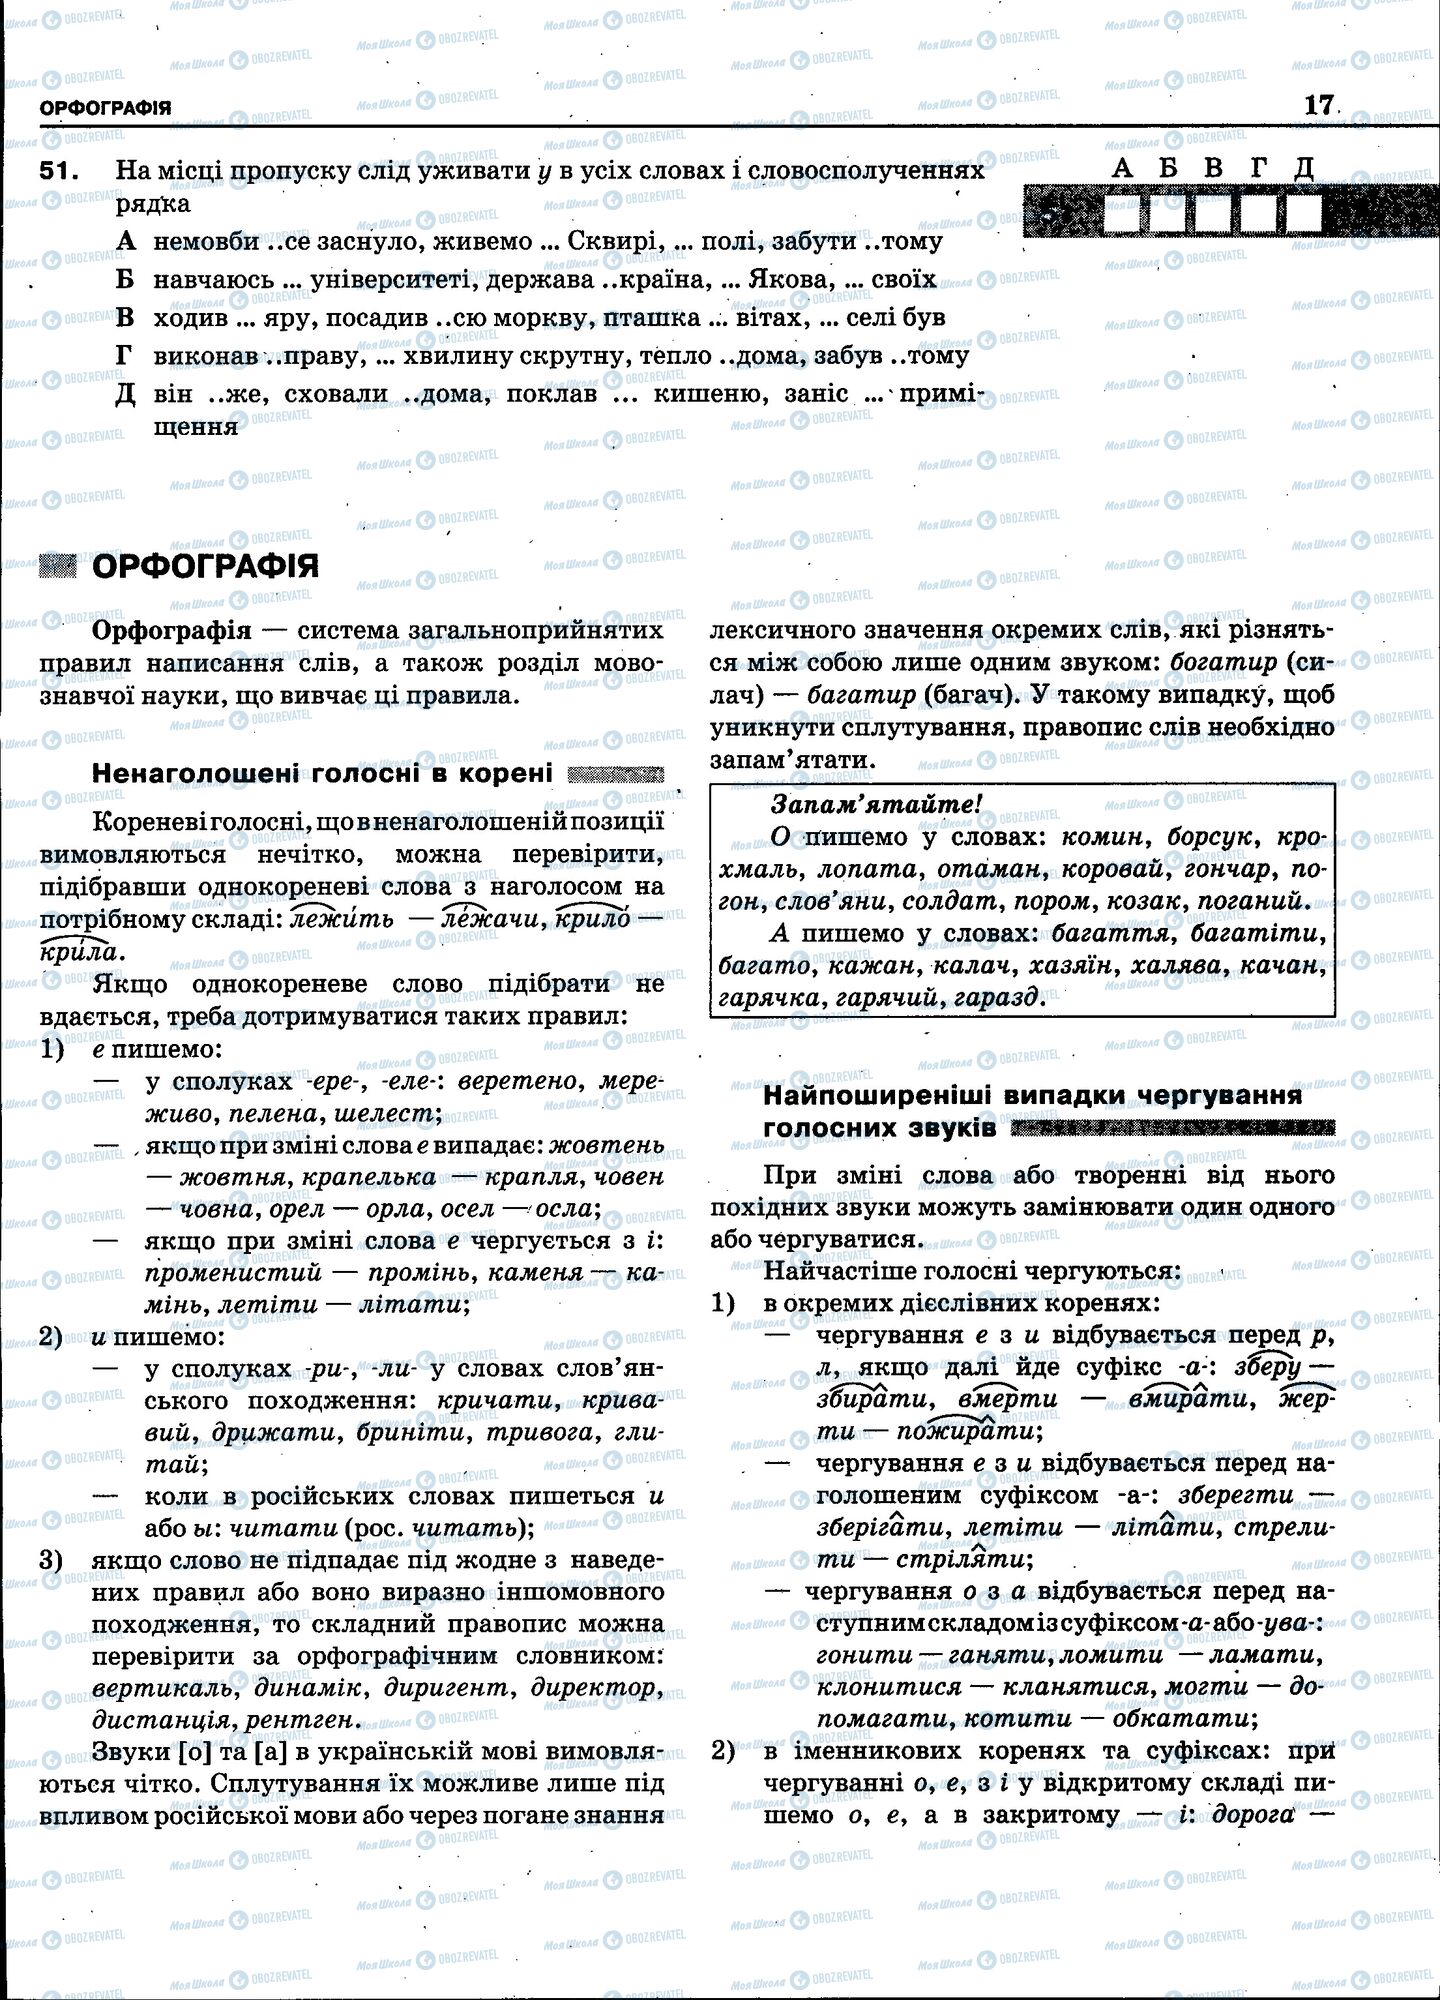 ЗНО Укр мова 11 класс страница 015